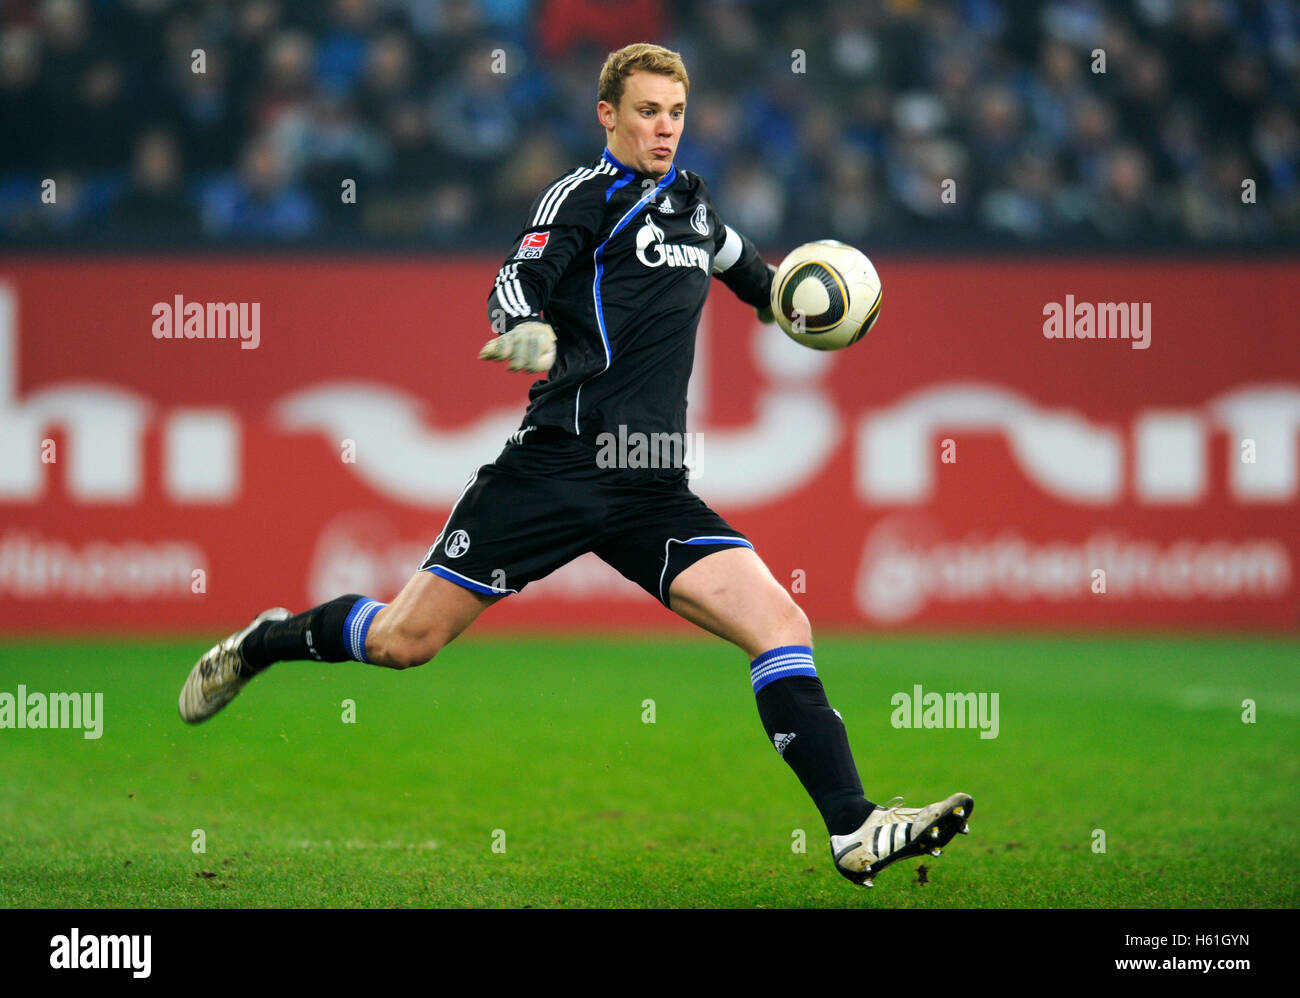 Liga di calcio tedesca immagini e fotografie stock ad alta risoluzione -  Alamy